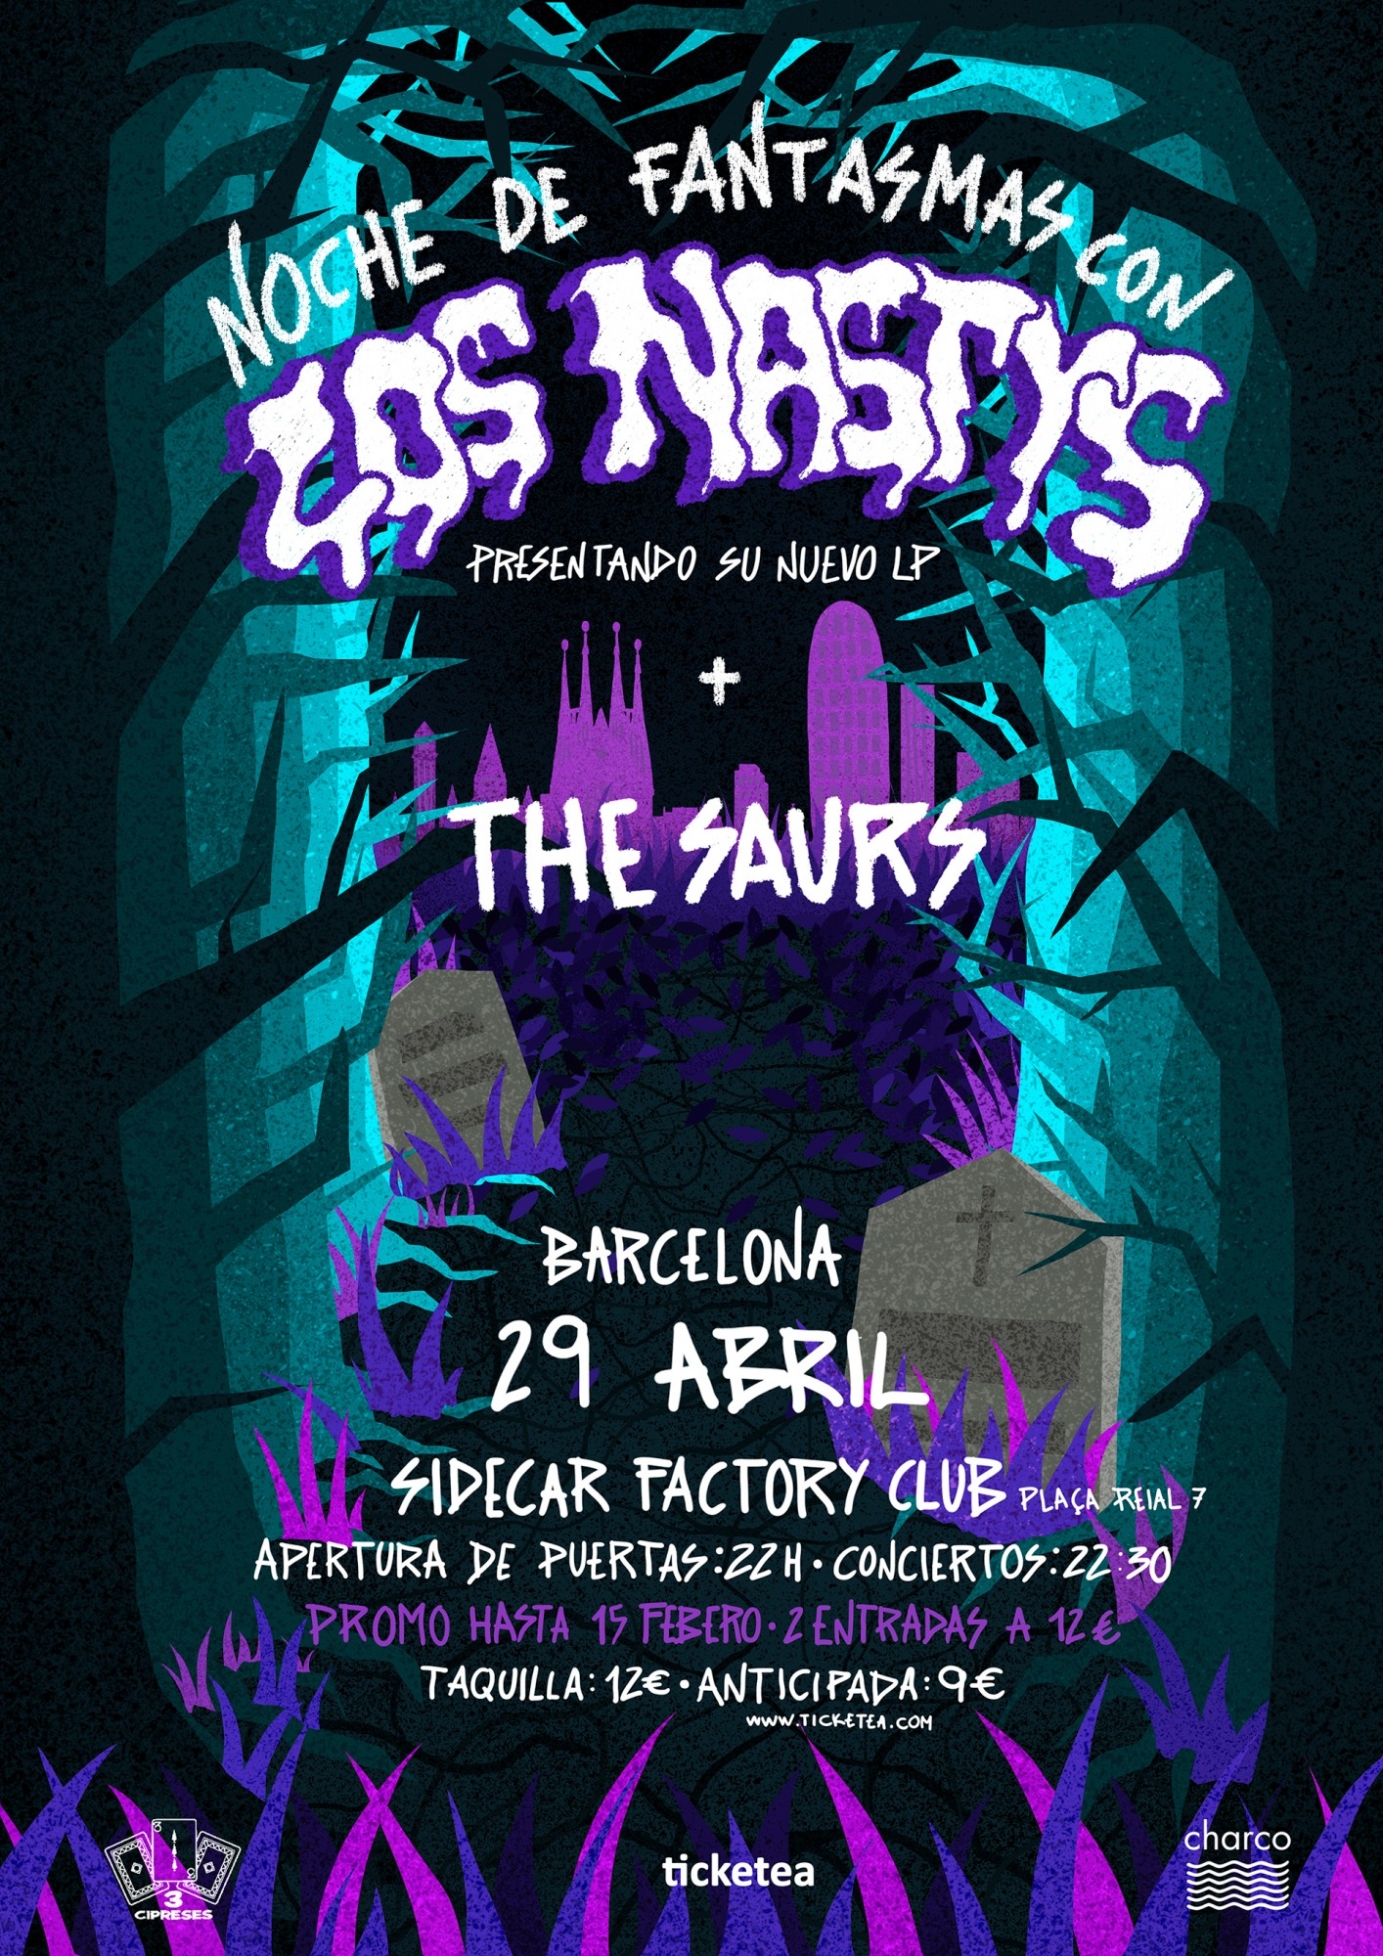 LP Noche de Fantasmas design for Los Nastys